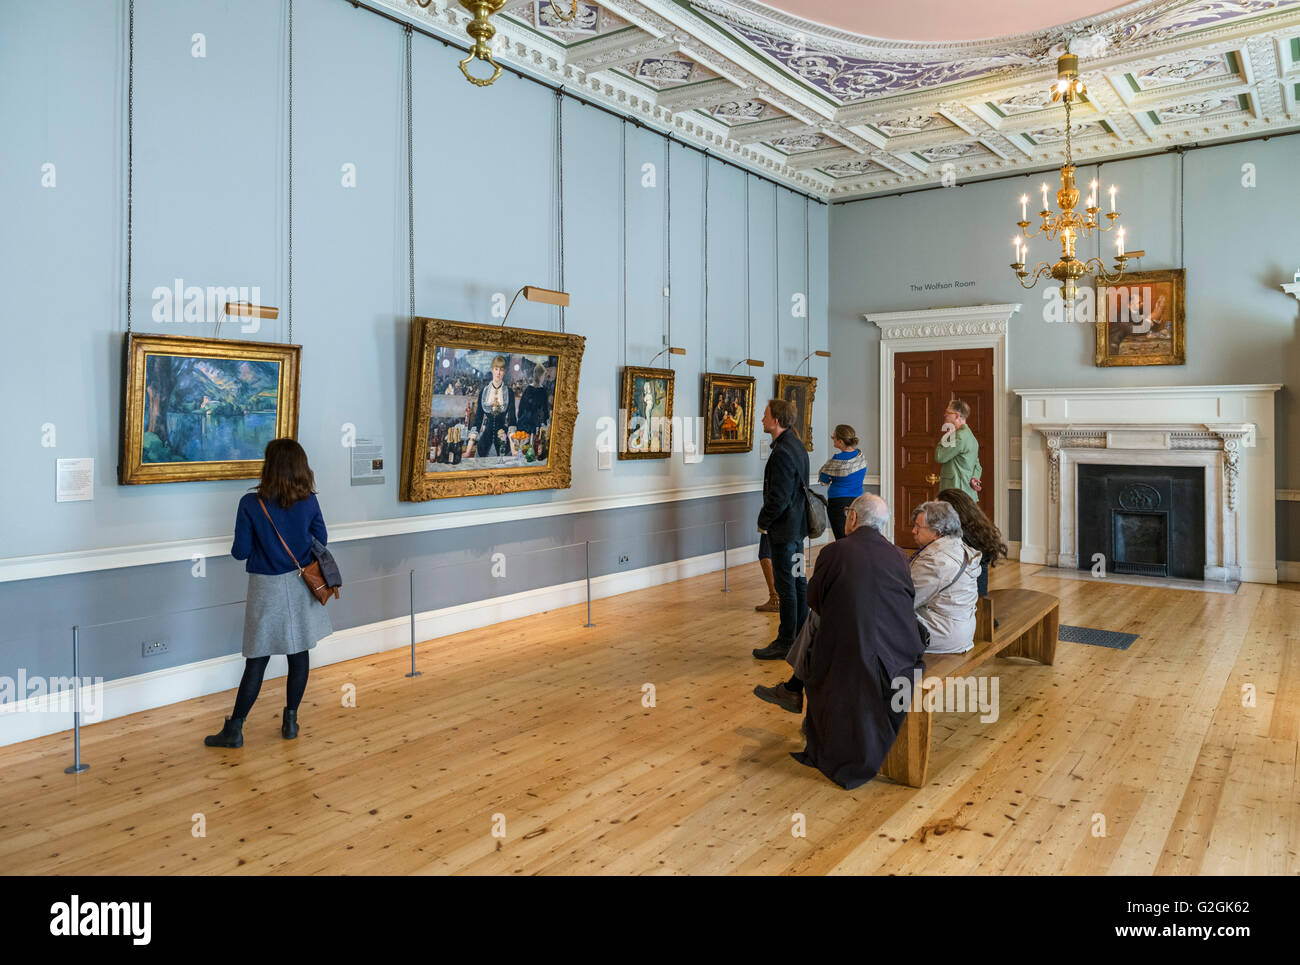 L'art impressionniste à l'intérieur de la Courtauld Gallery, Somerset House, The Strand, London, England, UK Banque D'Images